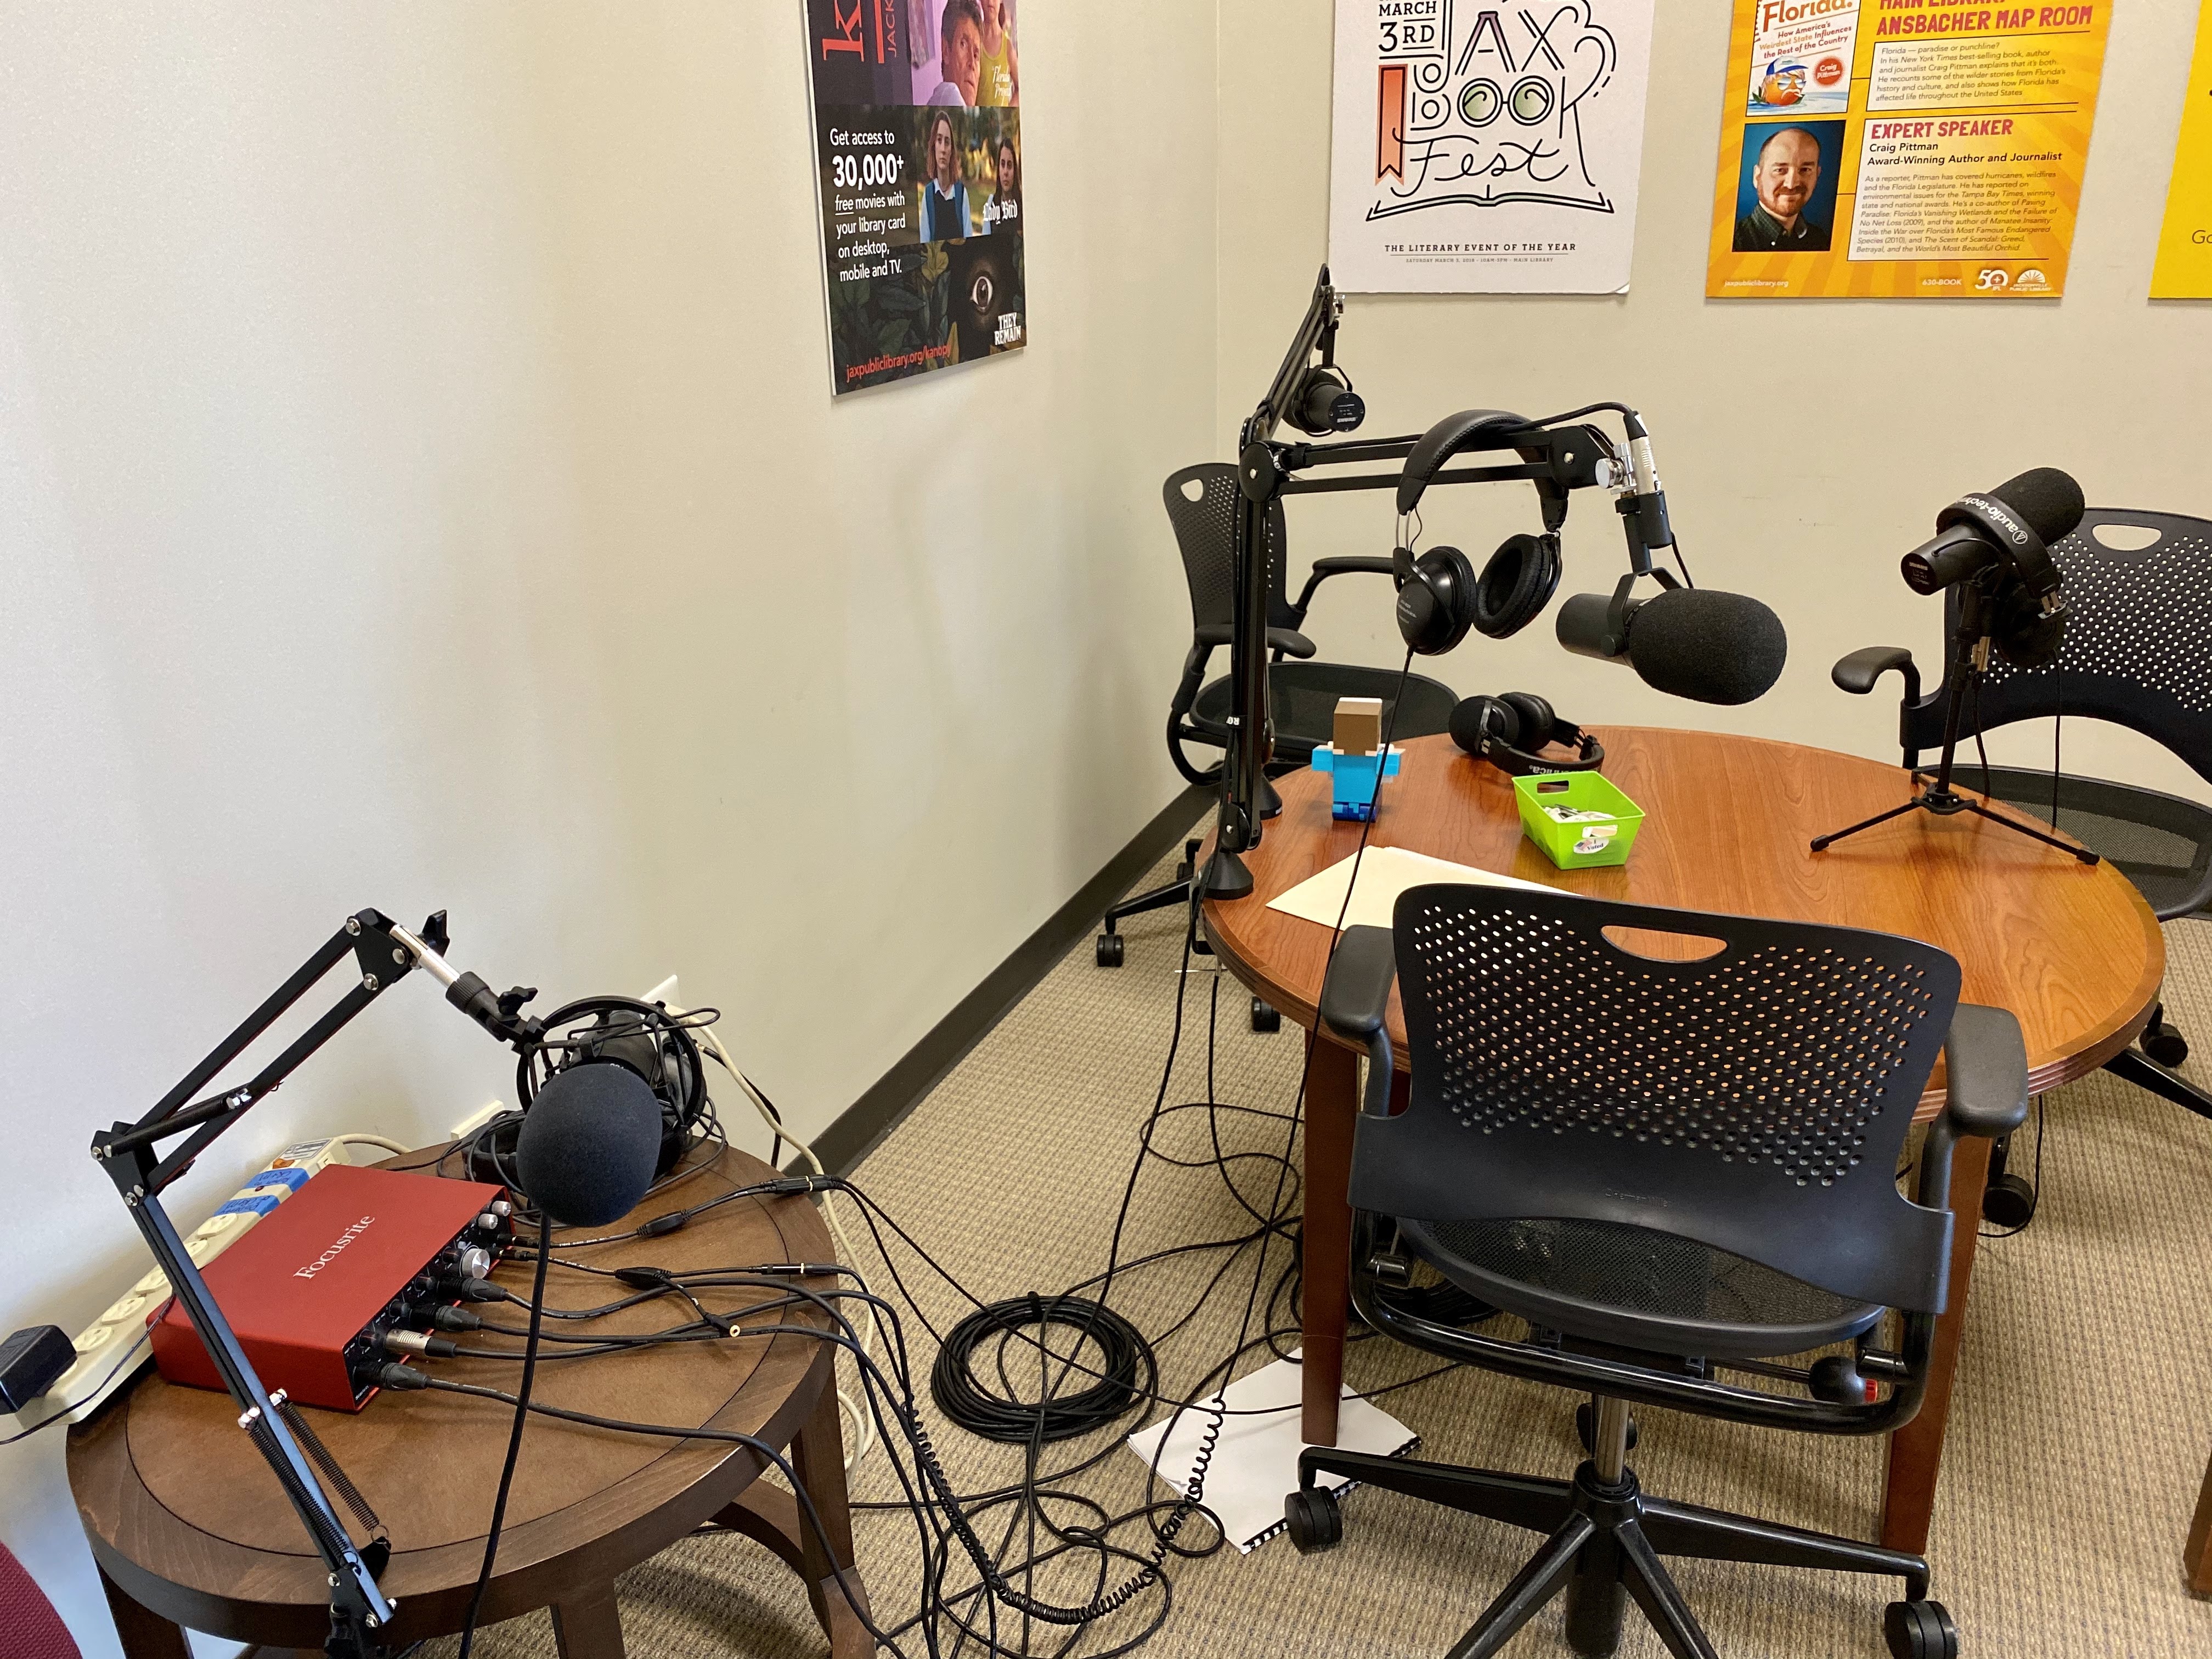 Podcast setup